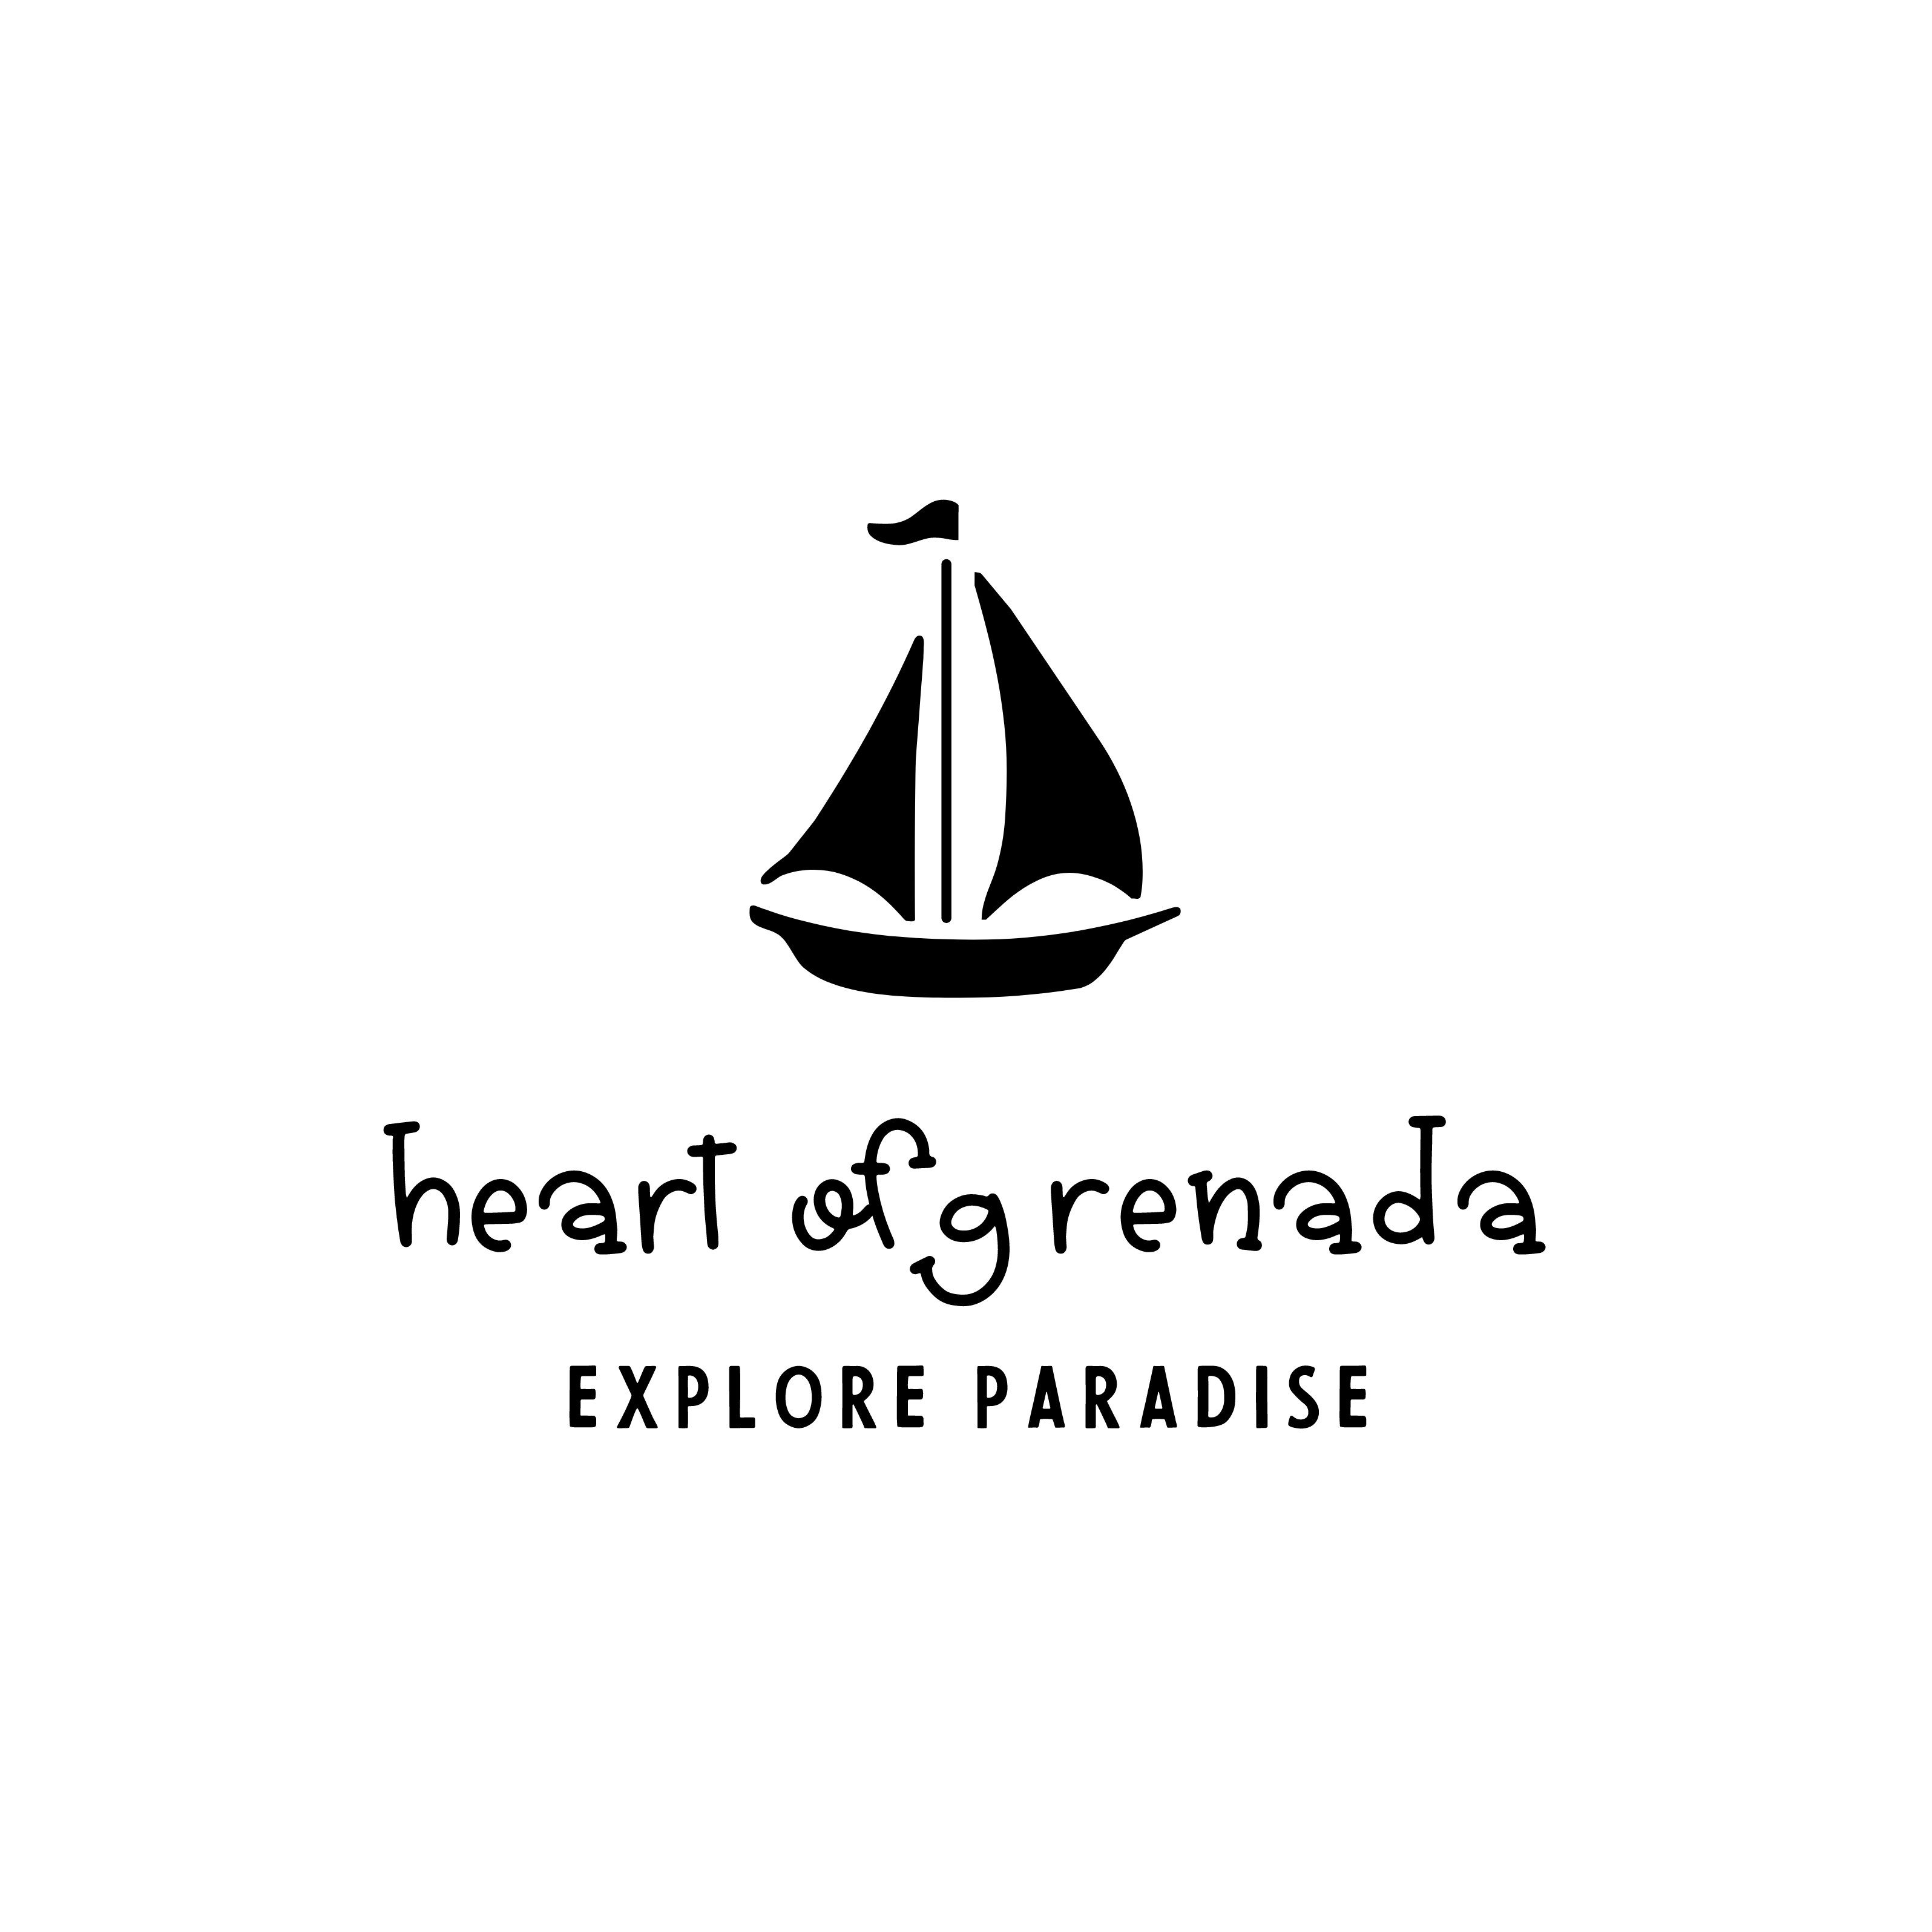 Heart of Grenada